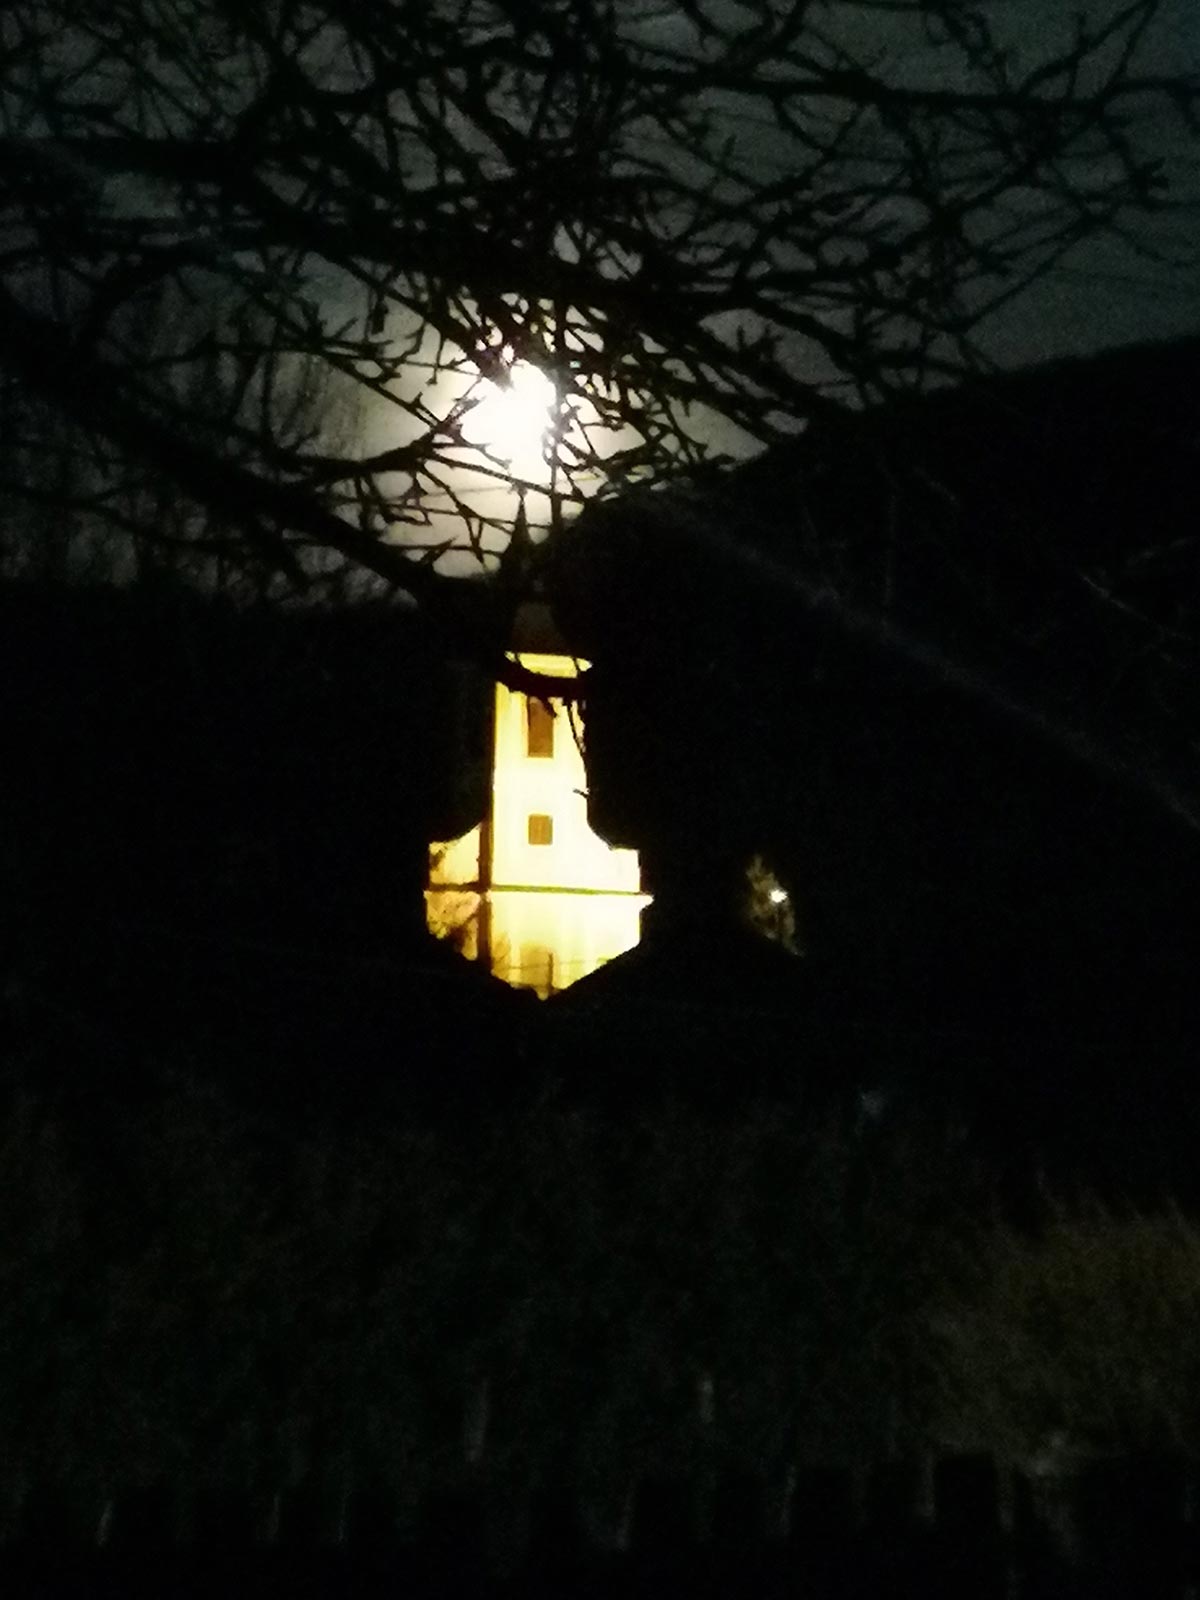 Holdfényes bátori templom - Fotó: Gyöngyösi Szilvia